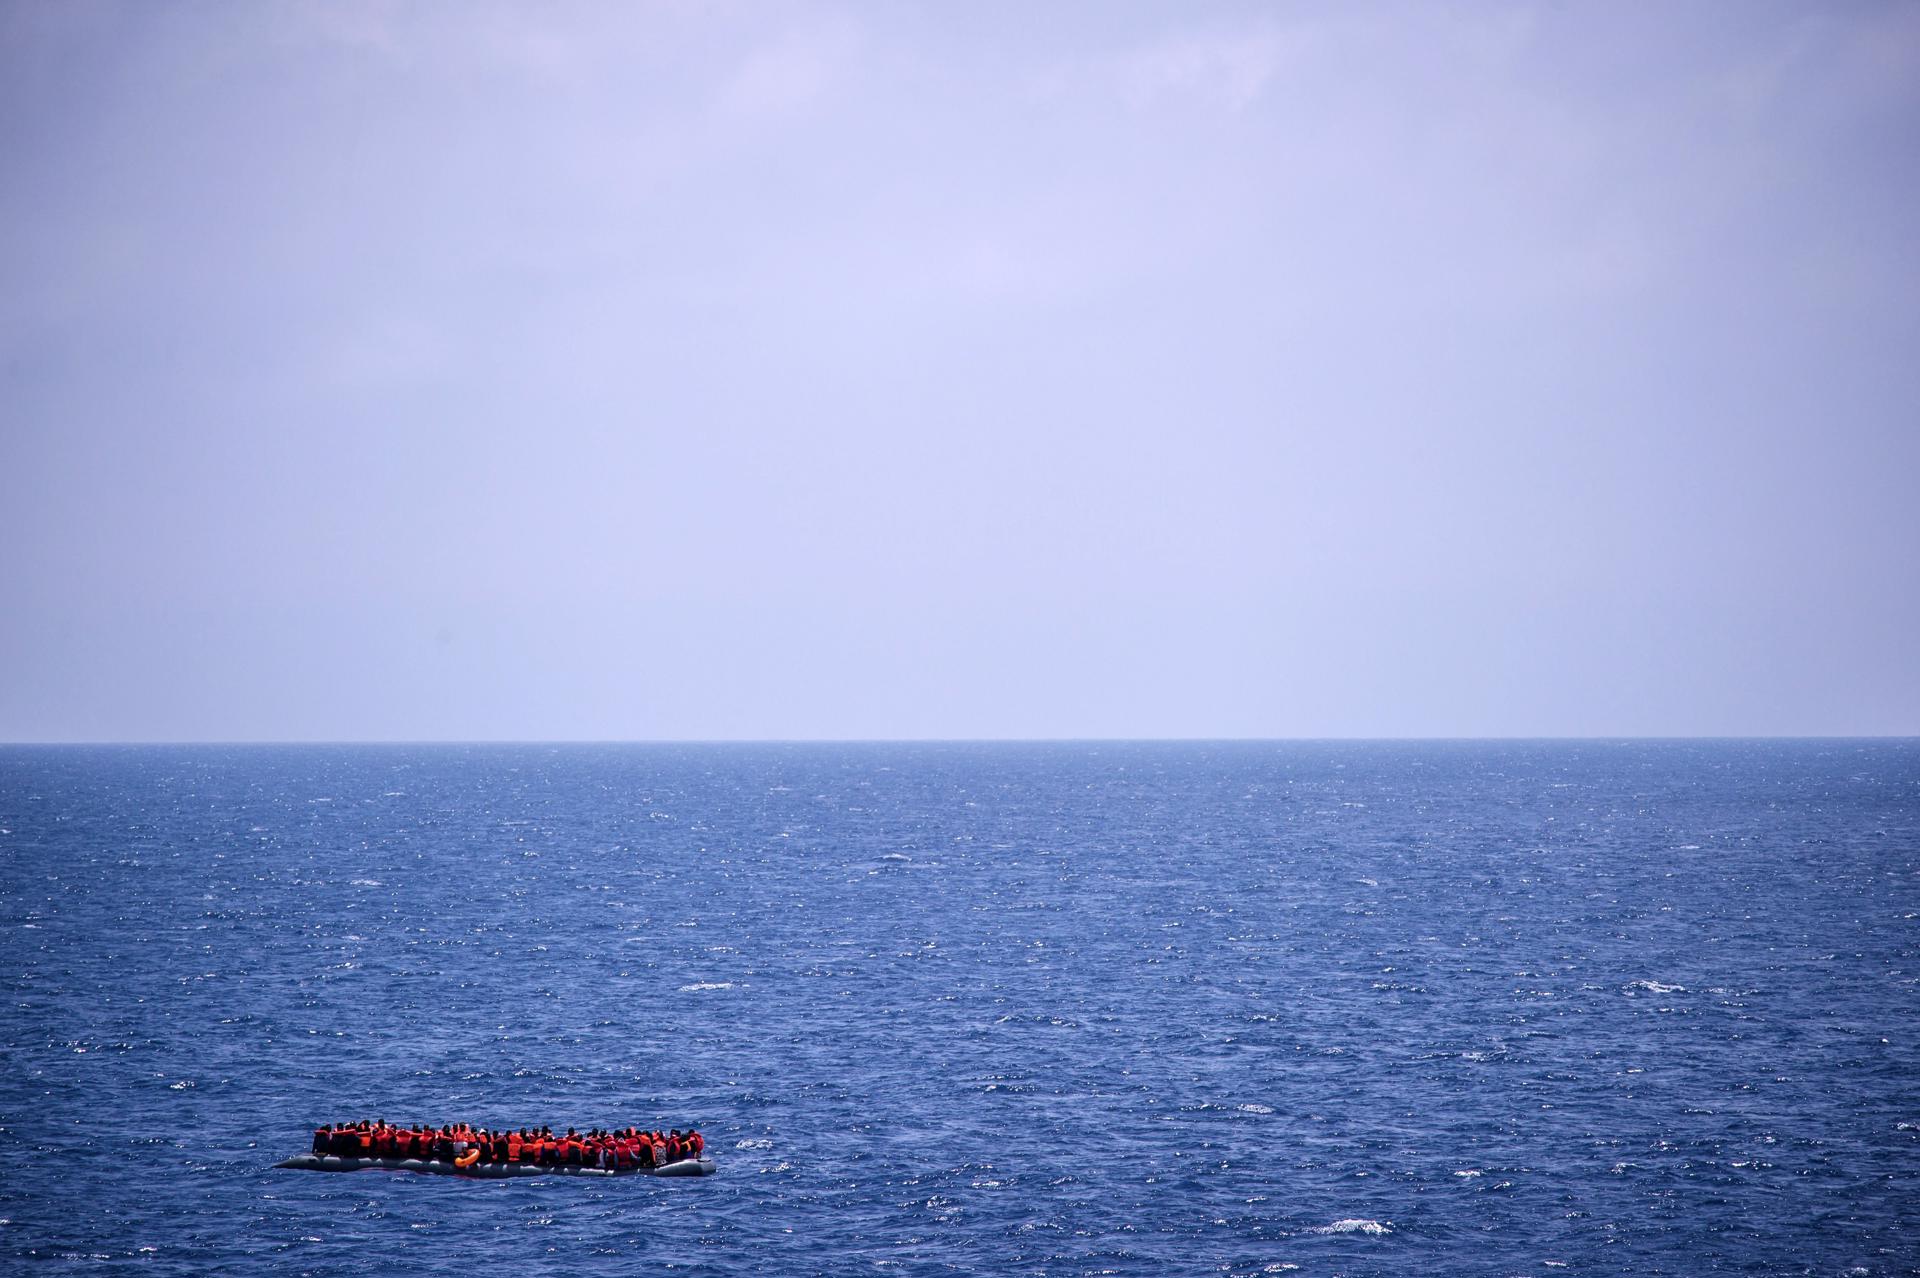 Foto de archivo de una lancha rescatada en el Mar Mediterráneo. EFE/ Christophe Petit Tesson